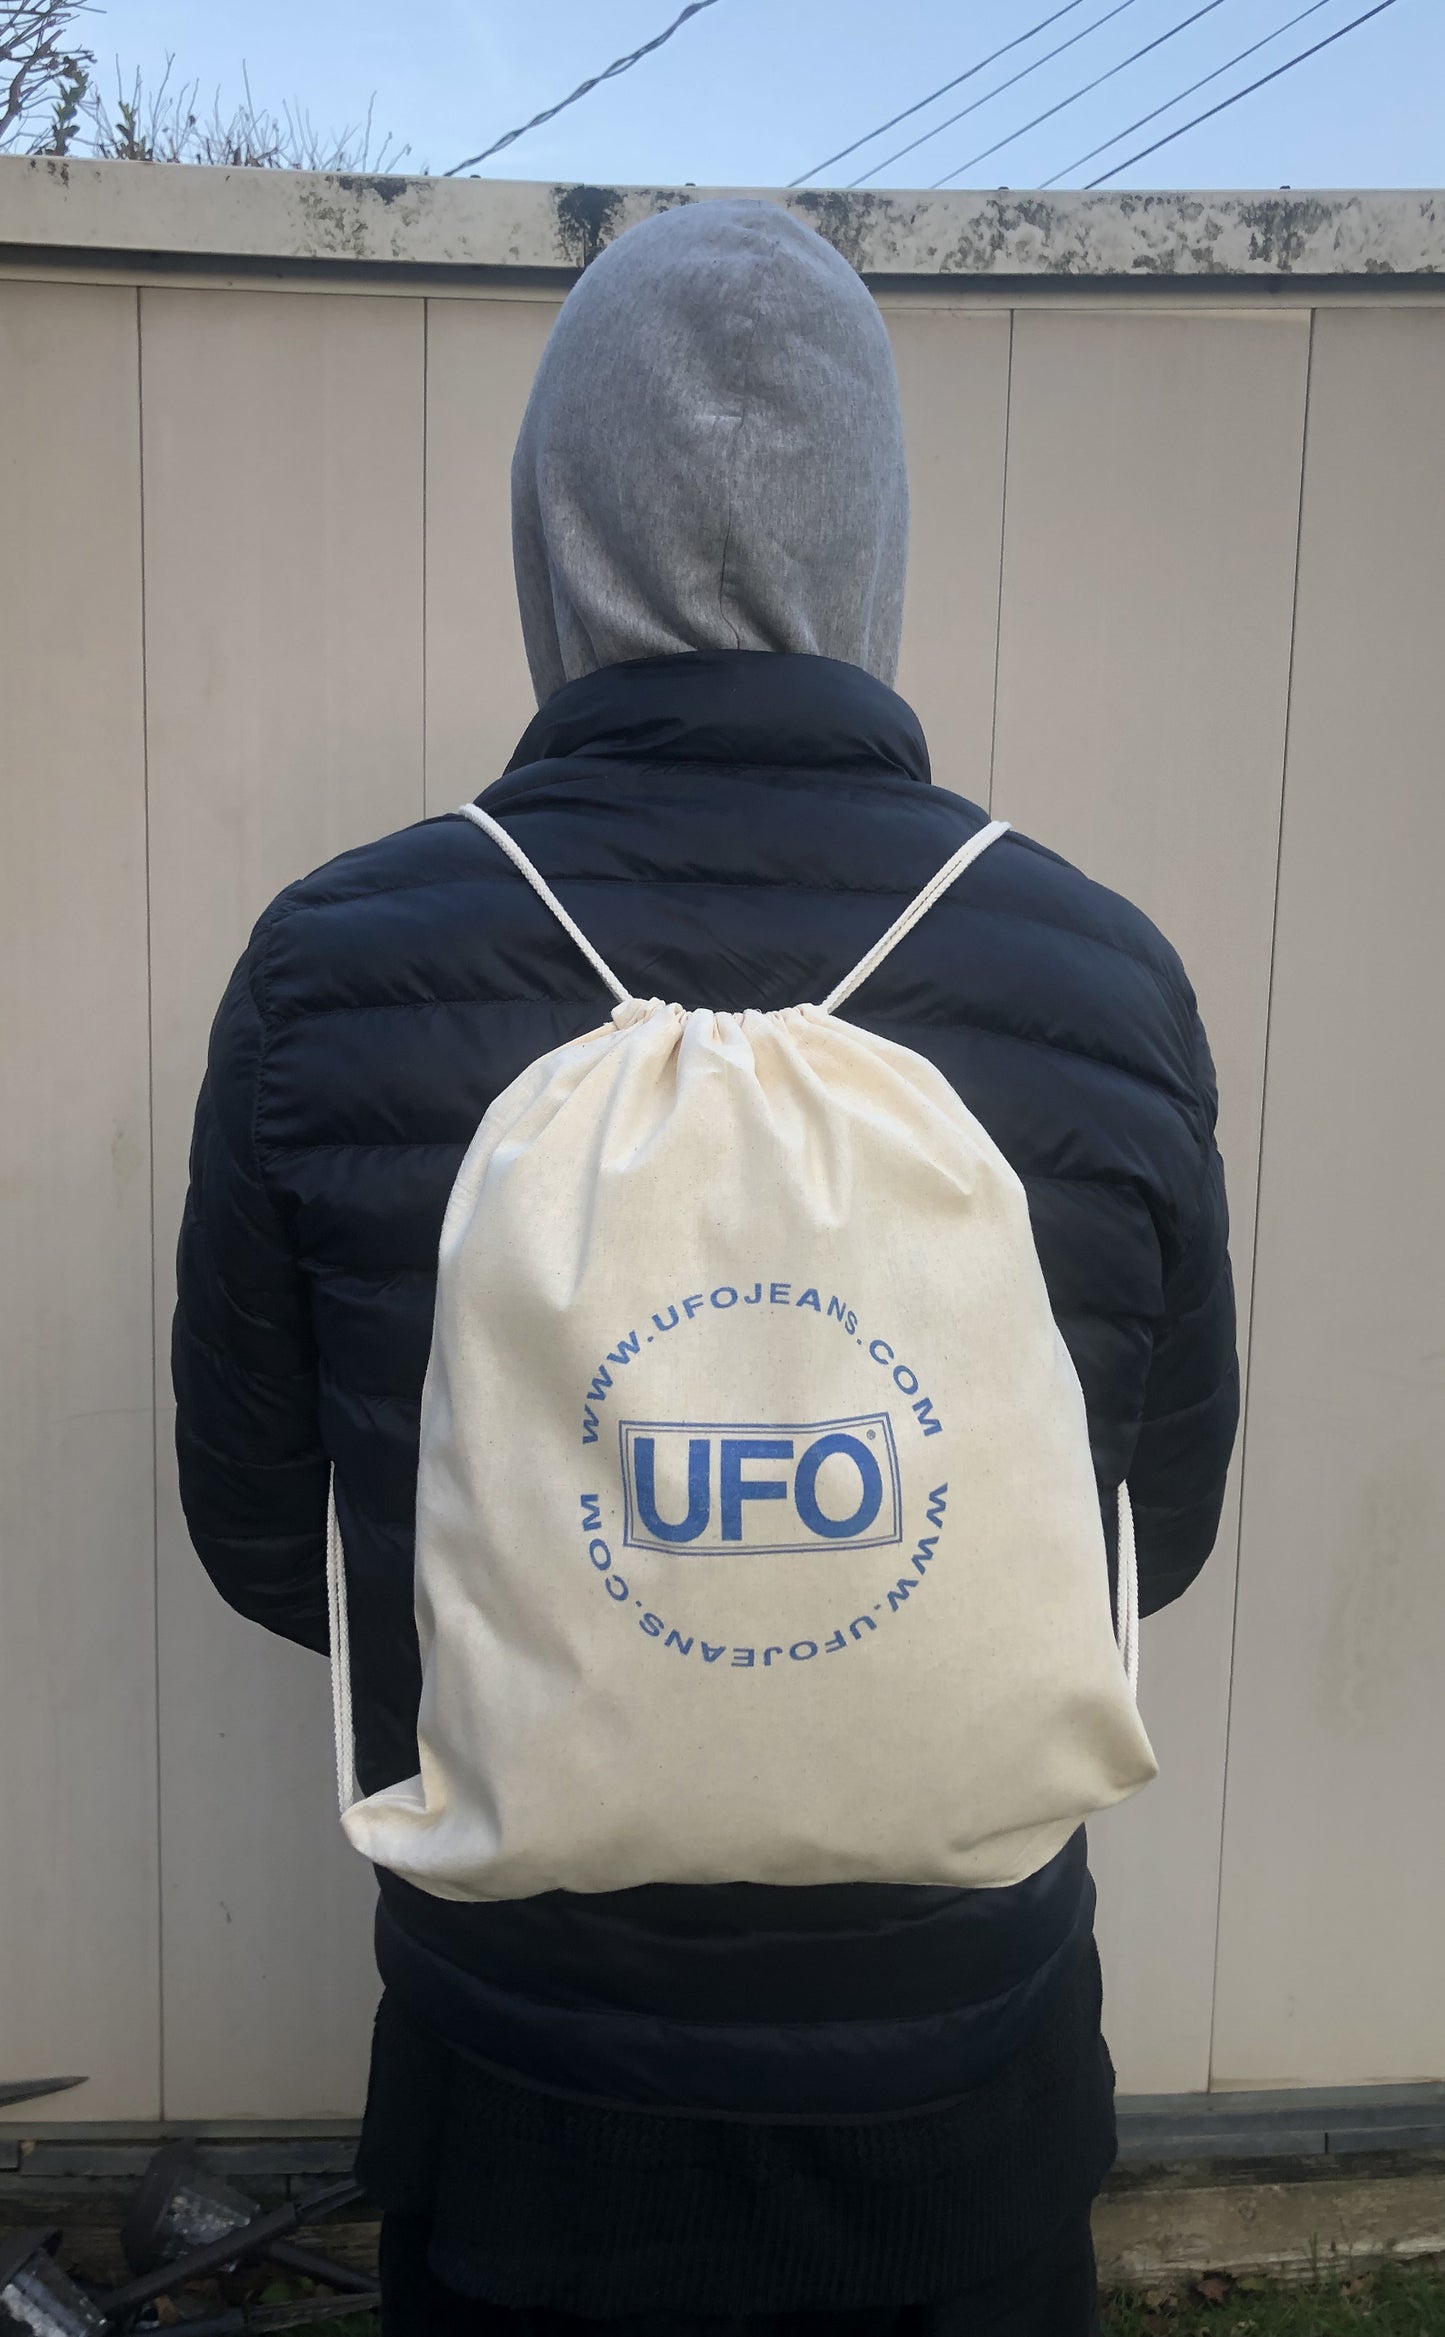 Rucksack mit Kordelzug aus natürlicher Baumwolle mit UFO-Markendesign Nr. 30350